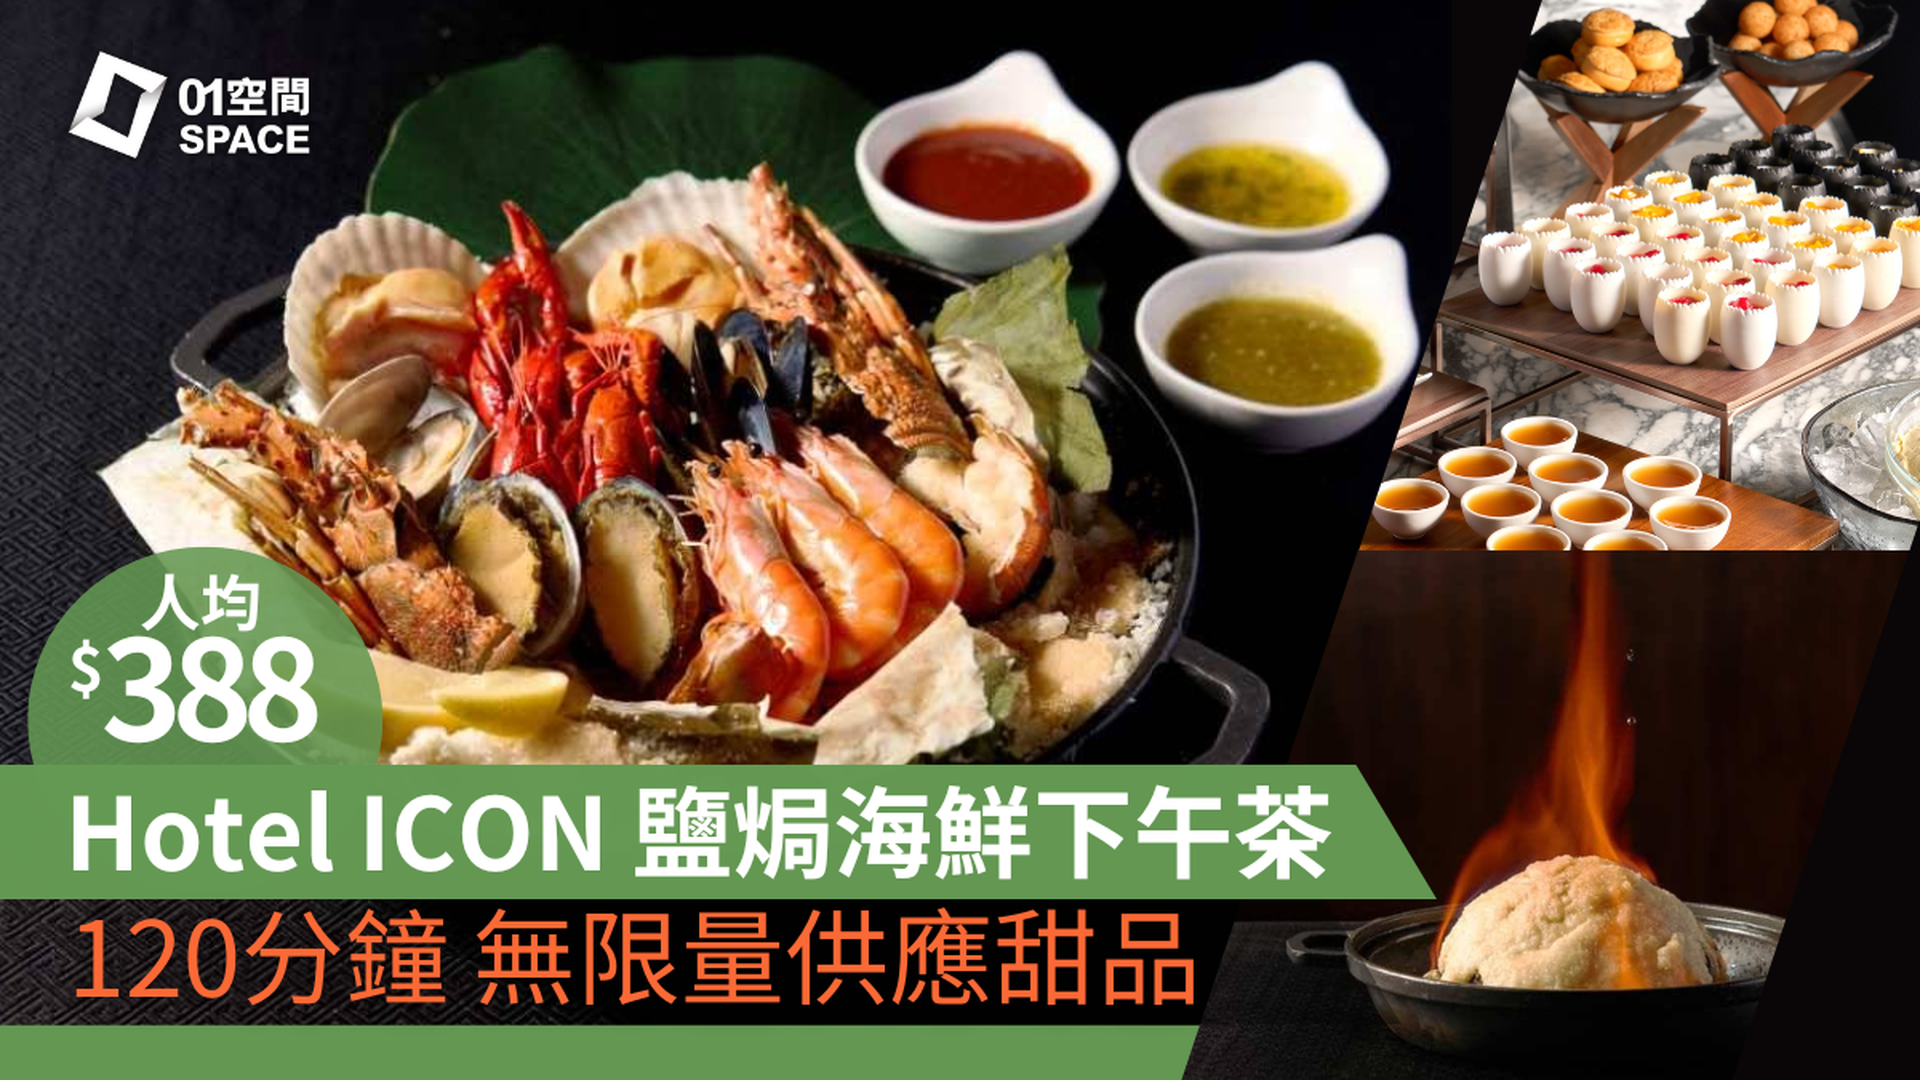 唯港薈 Hotel ICON｜THE MARKET｜4道菜火焰鹽焗海鮮下午茶（需3個工作天前預訂）